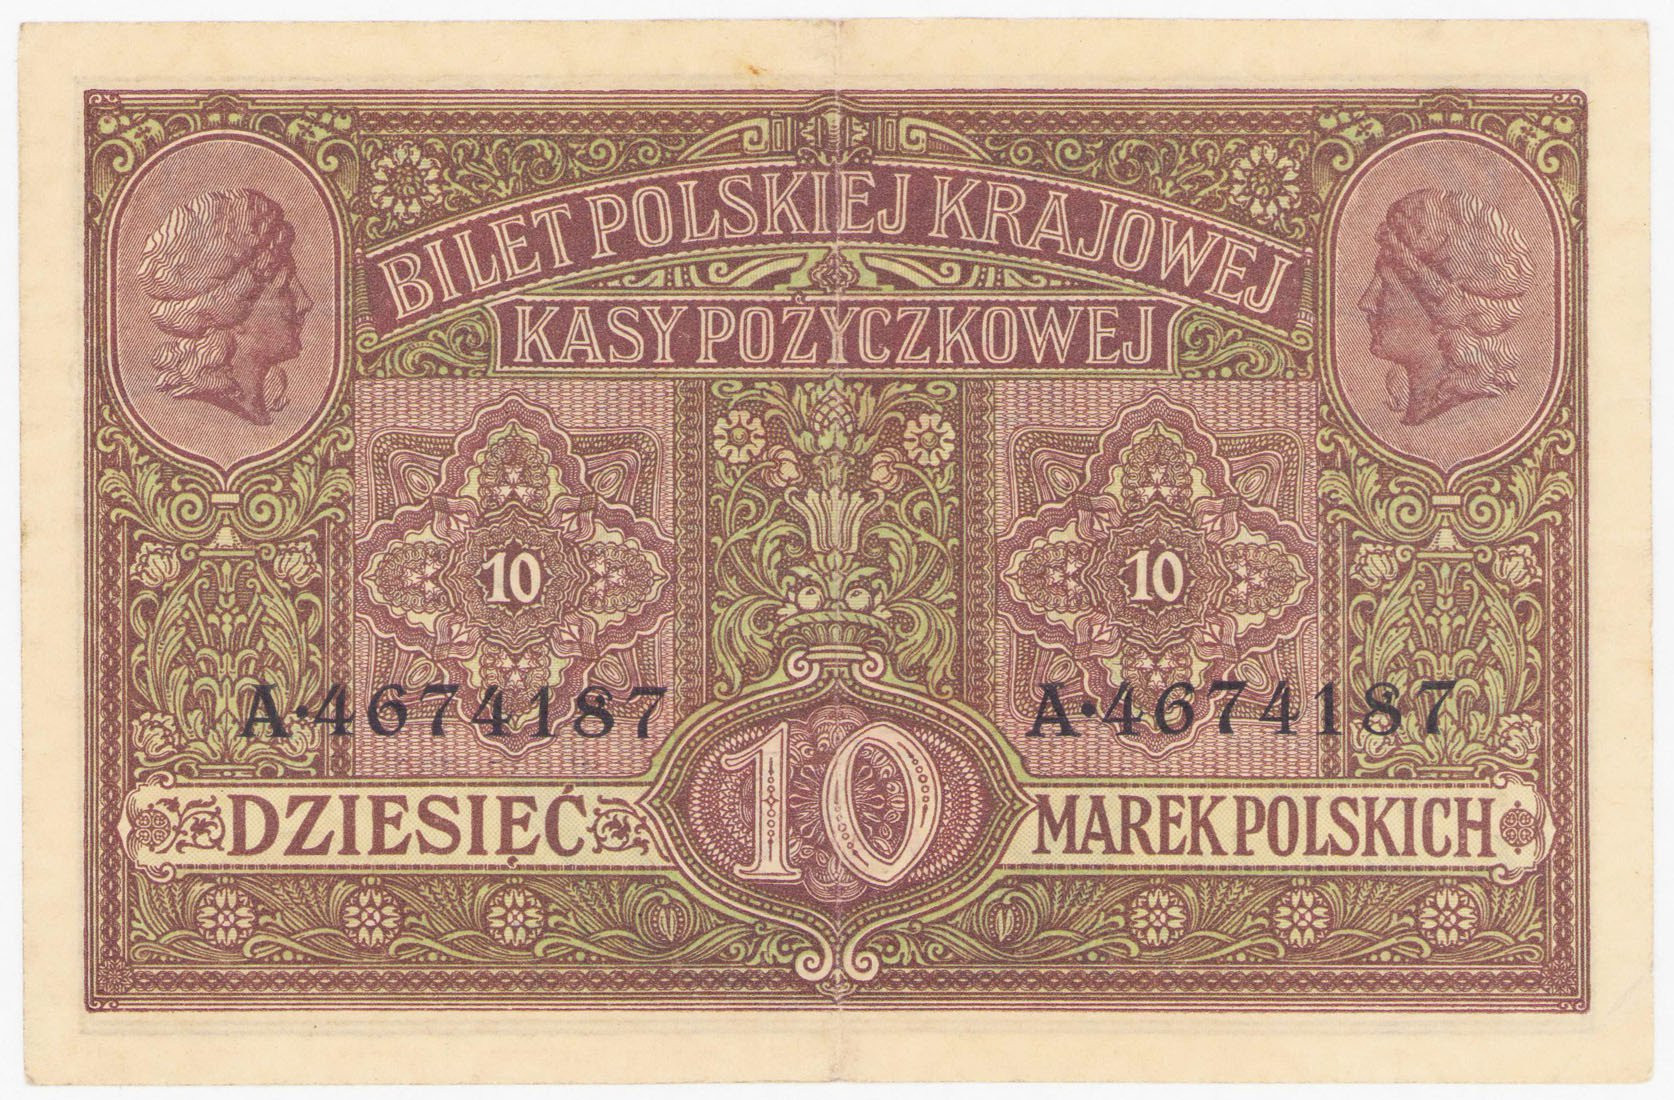 10 marek polskich 1916 seria A - Generał, biletów – RZADKI